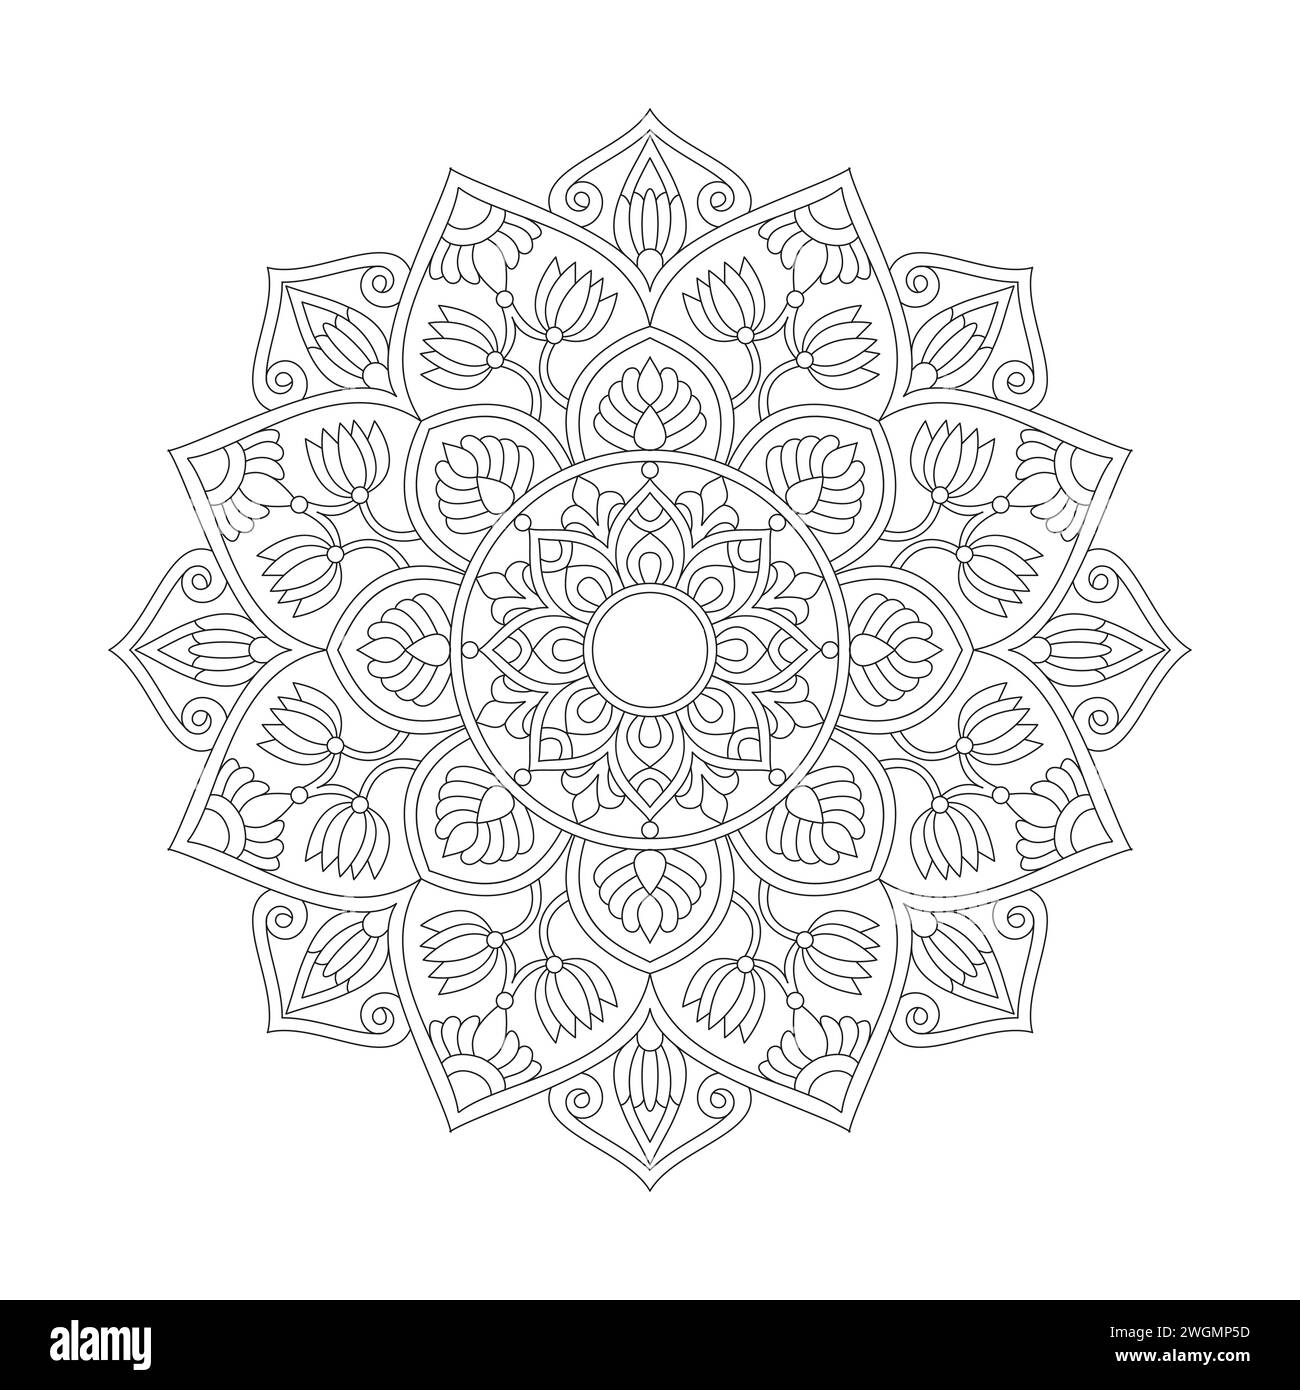 Affermazioni radiali pagina dei libri coloranti Mandala per l'interno del libro KDP. Petali tranquilli, capacità di rilassarsi, esperienze cerebrali, paradiso armonioso, pace Illustrazione Vettoriale